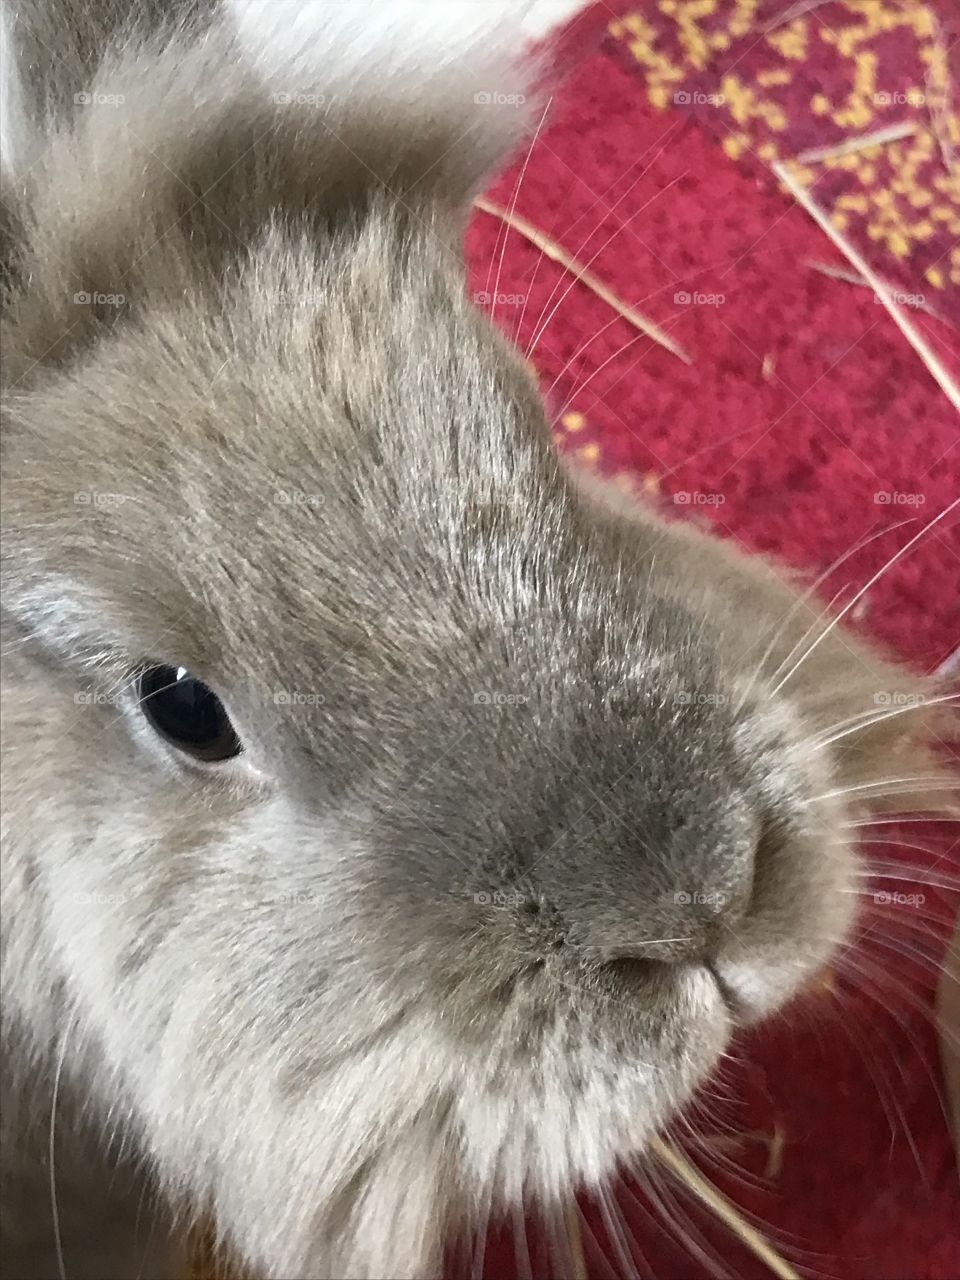 Bunny closeup